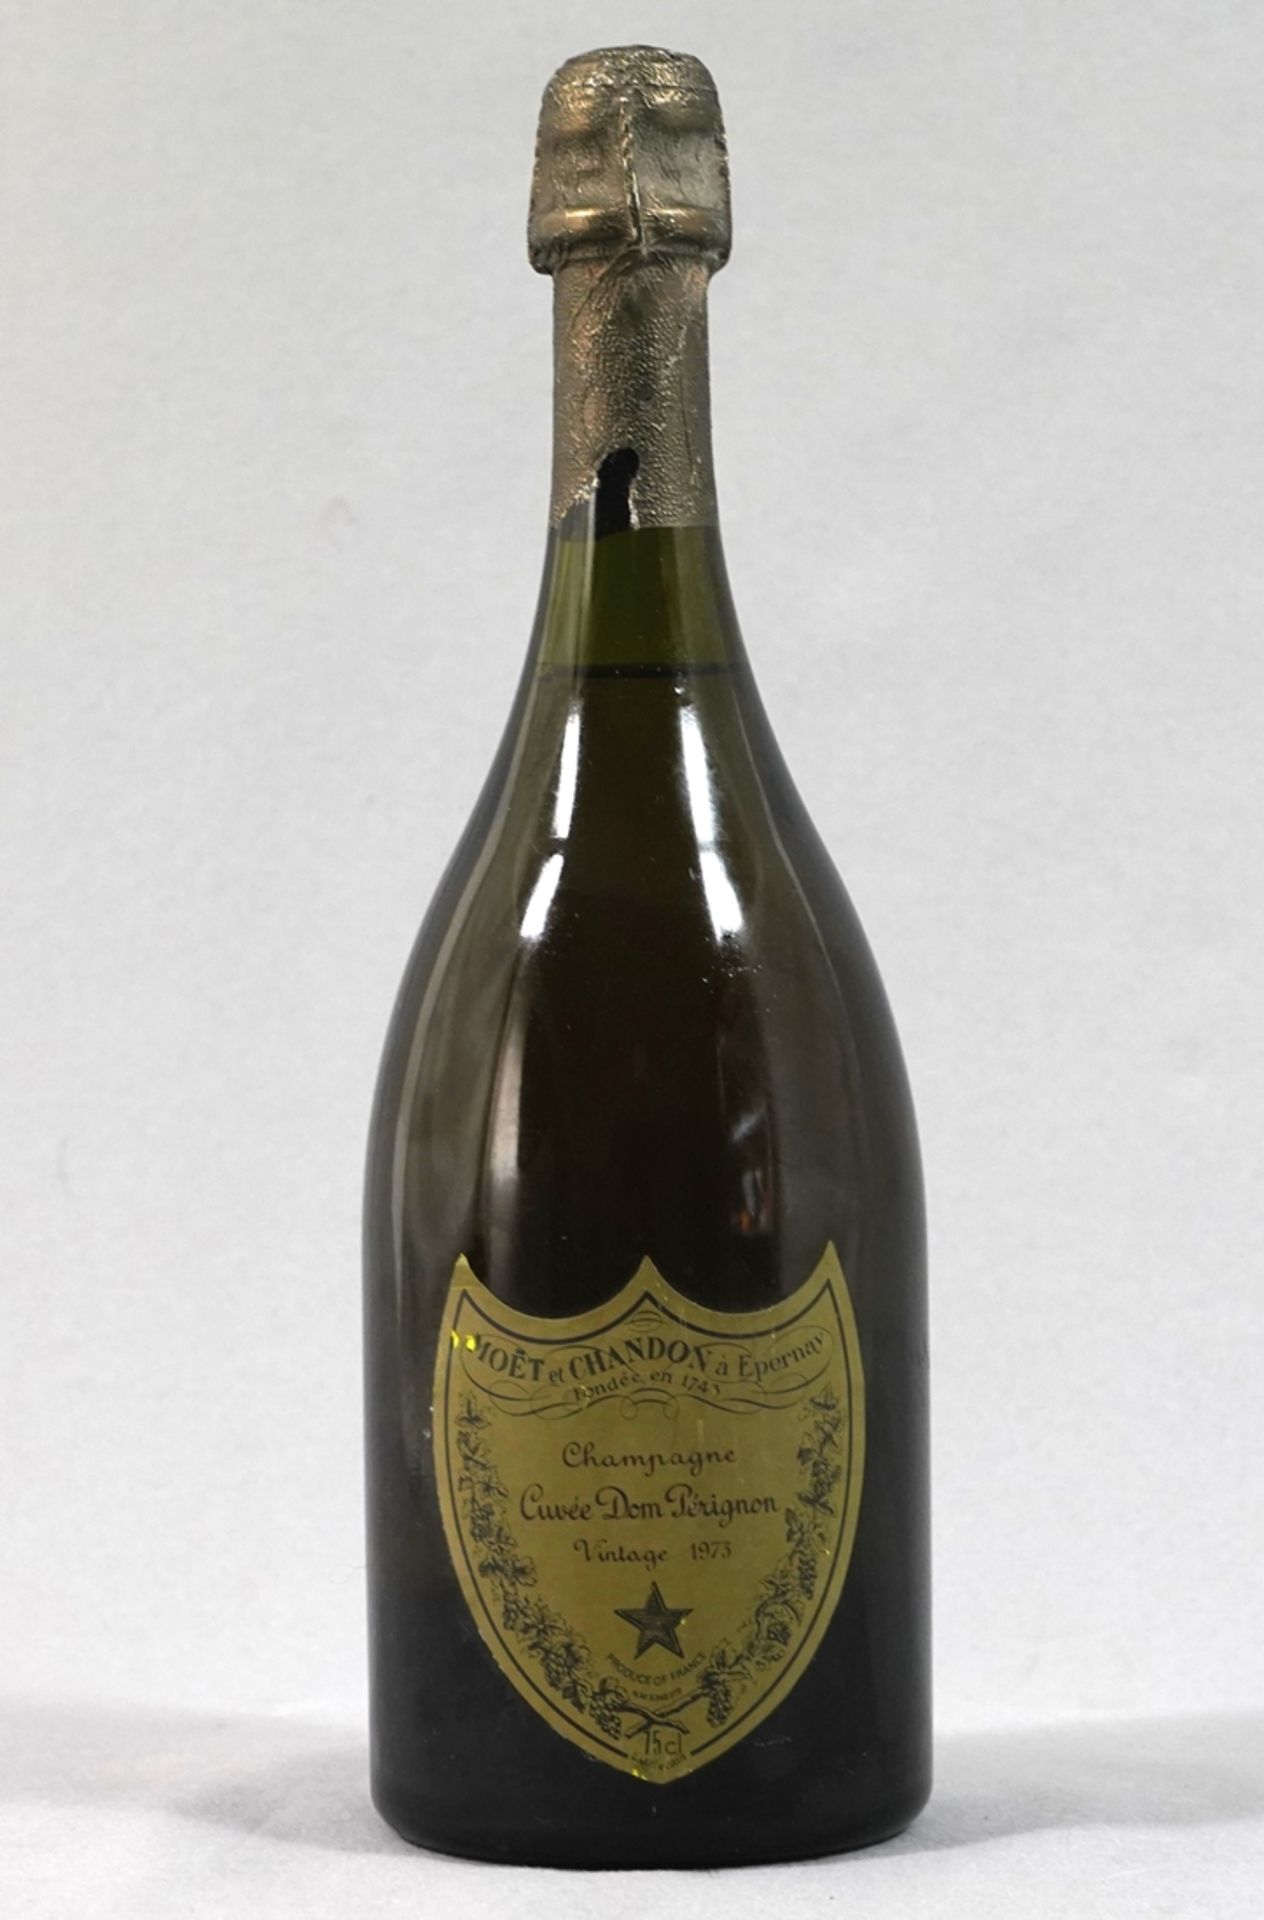 Bottle of Champagne Dom Pérignon 